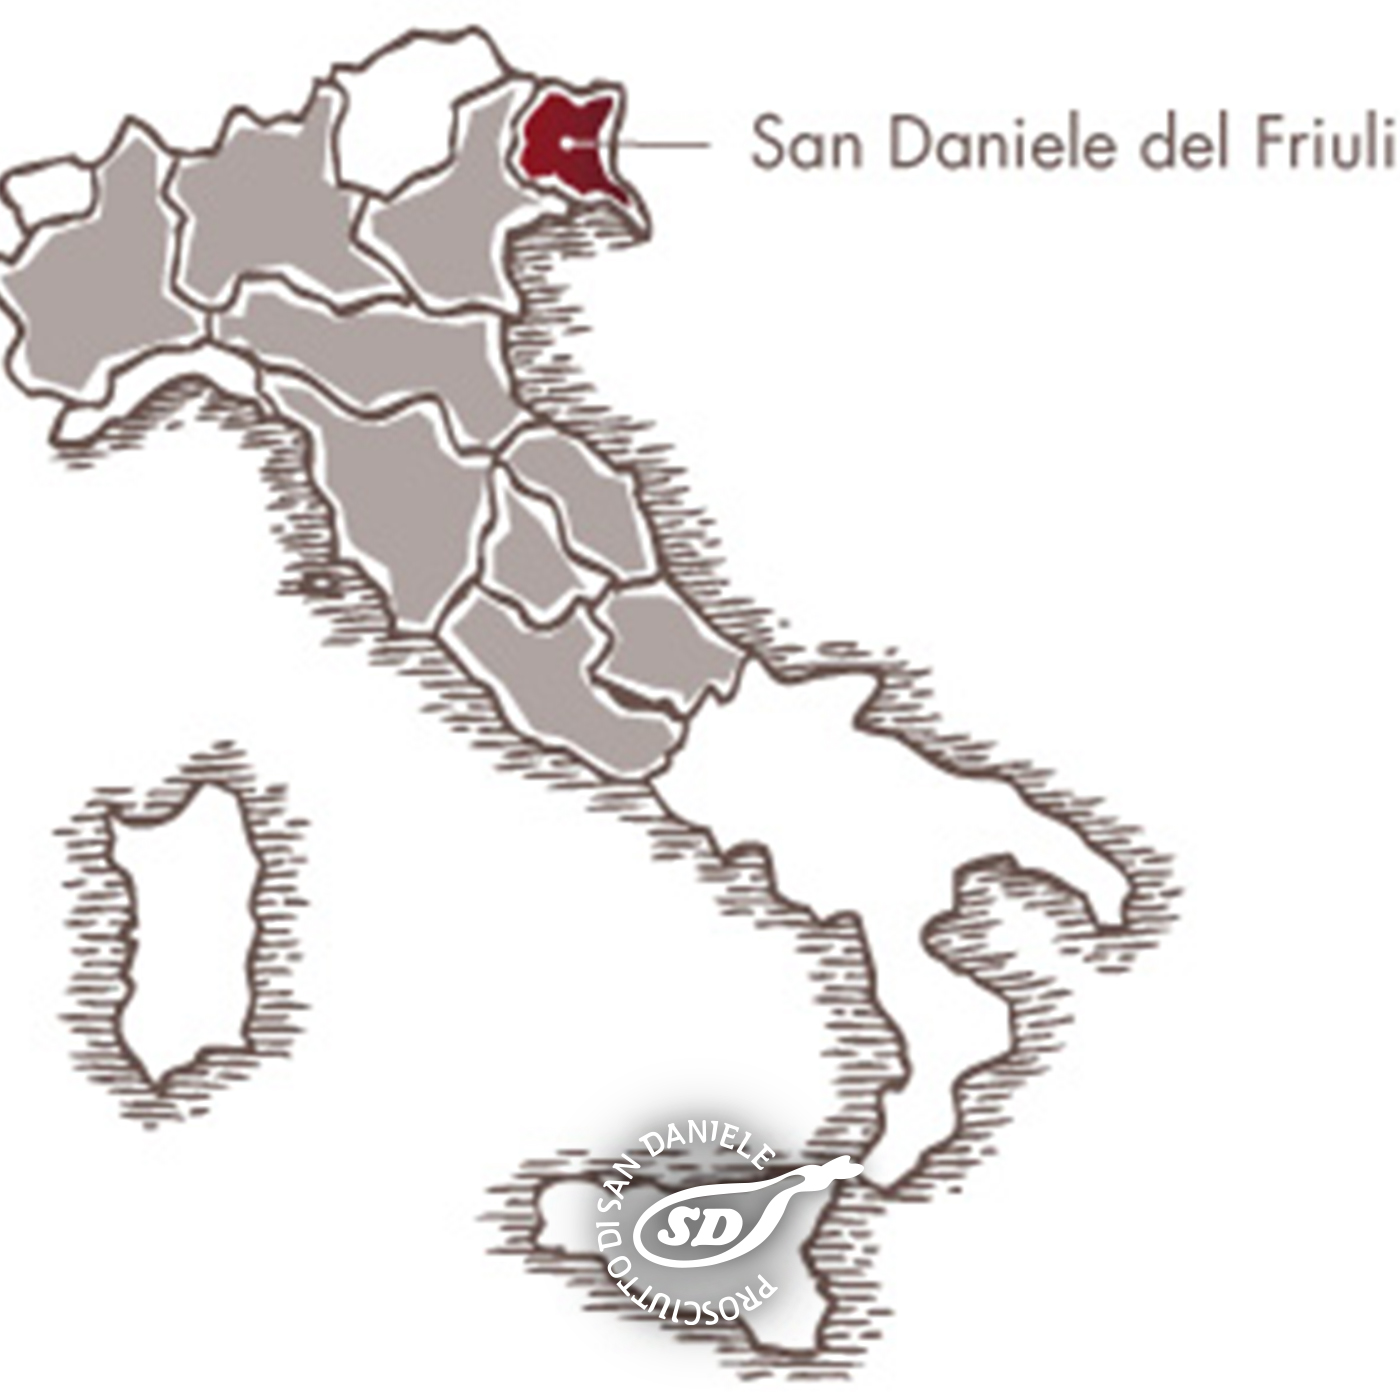 Ursprungsgebiete des Prosciutto di San Daniele